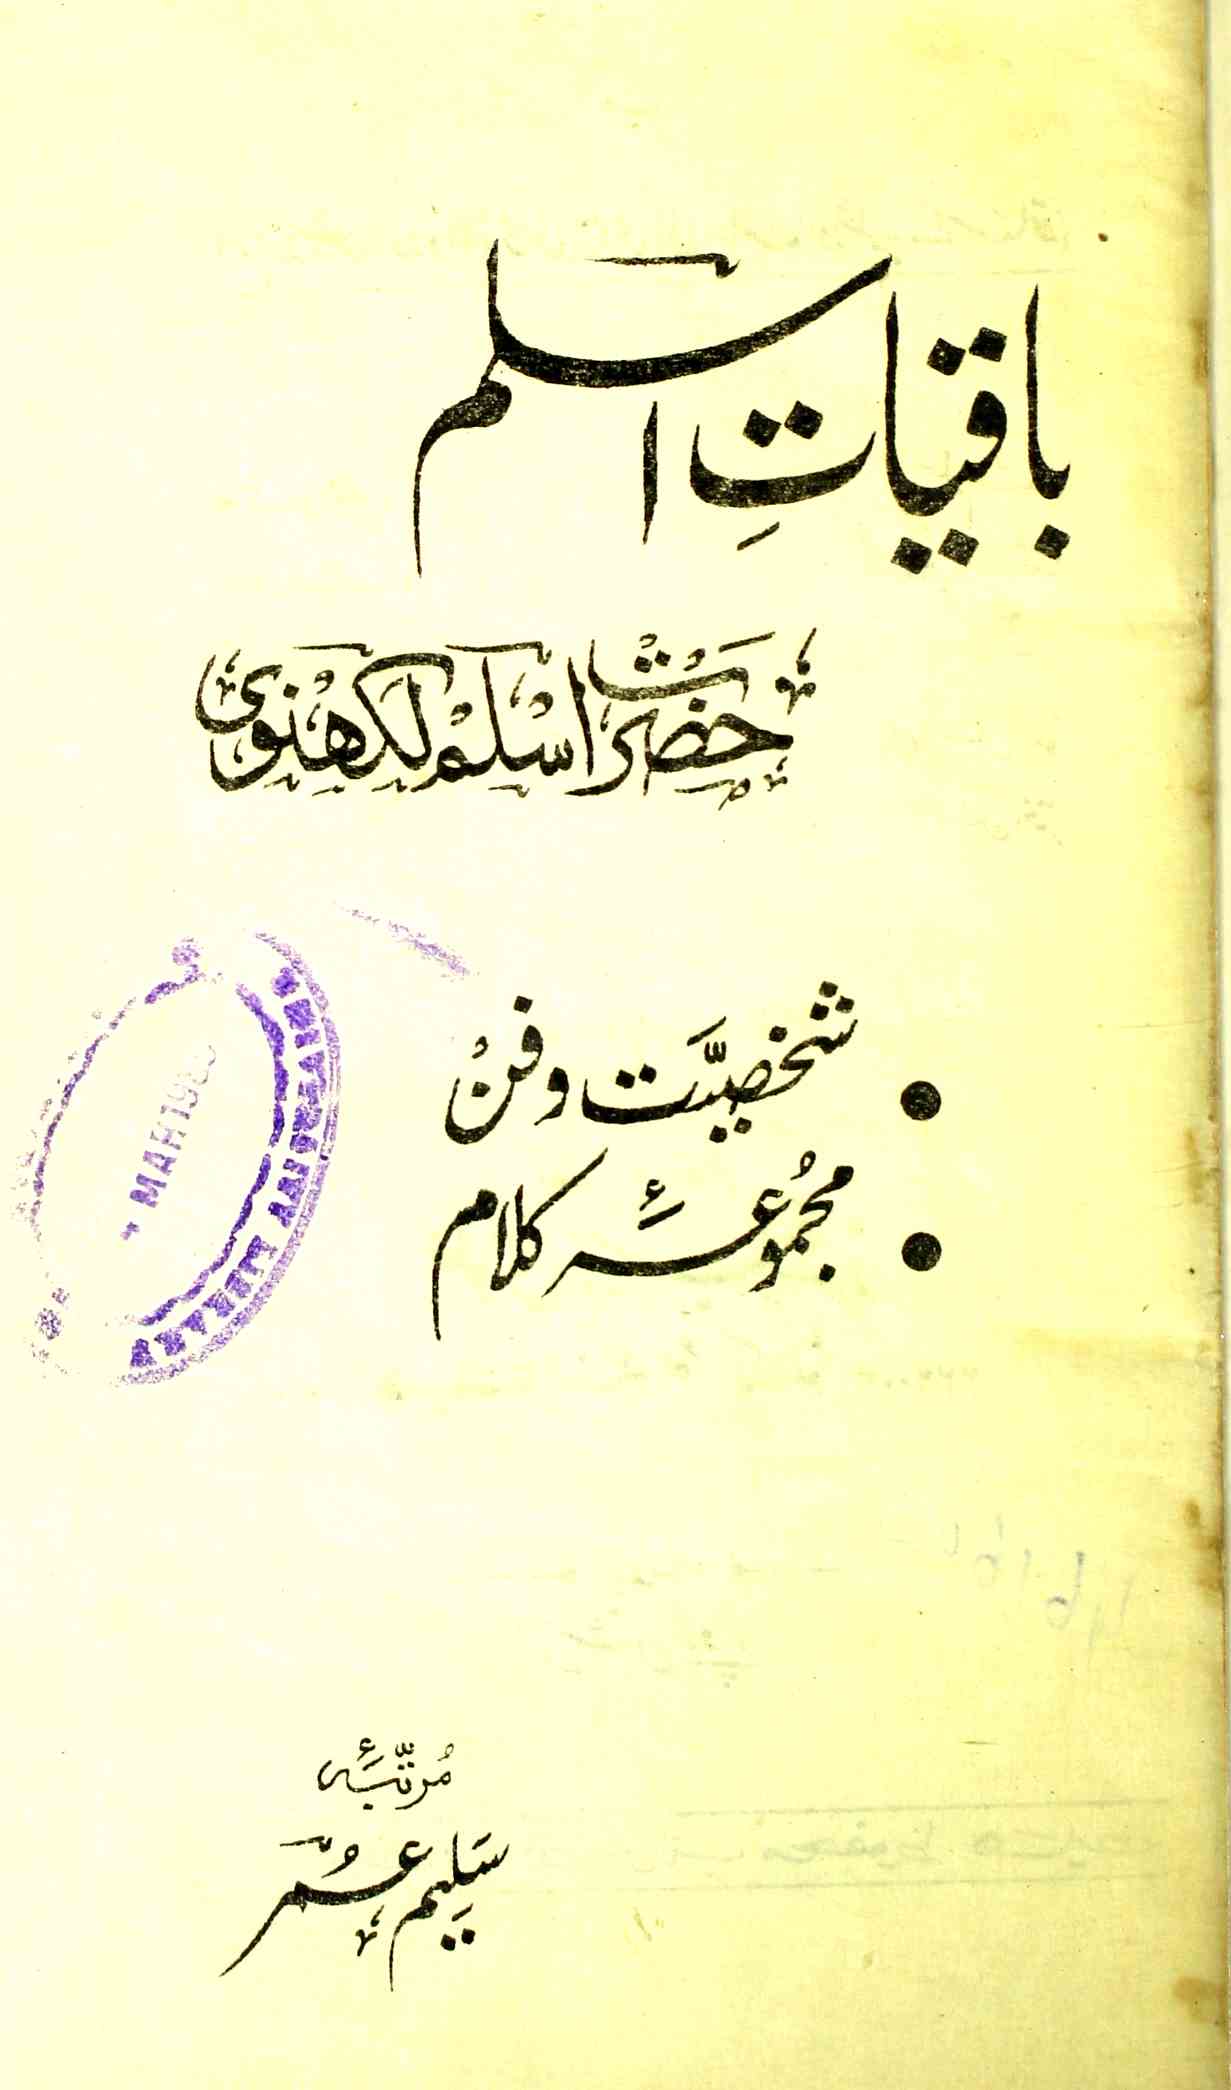 Baqiyat-e-Aslam